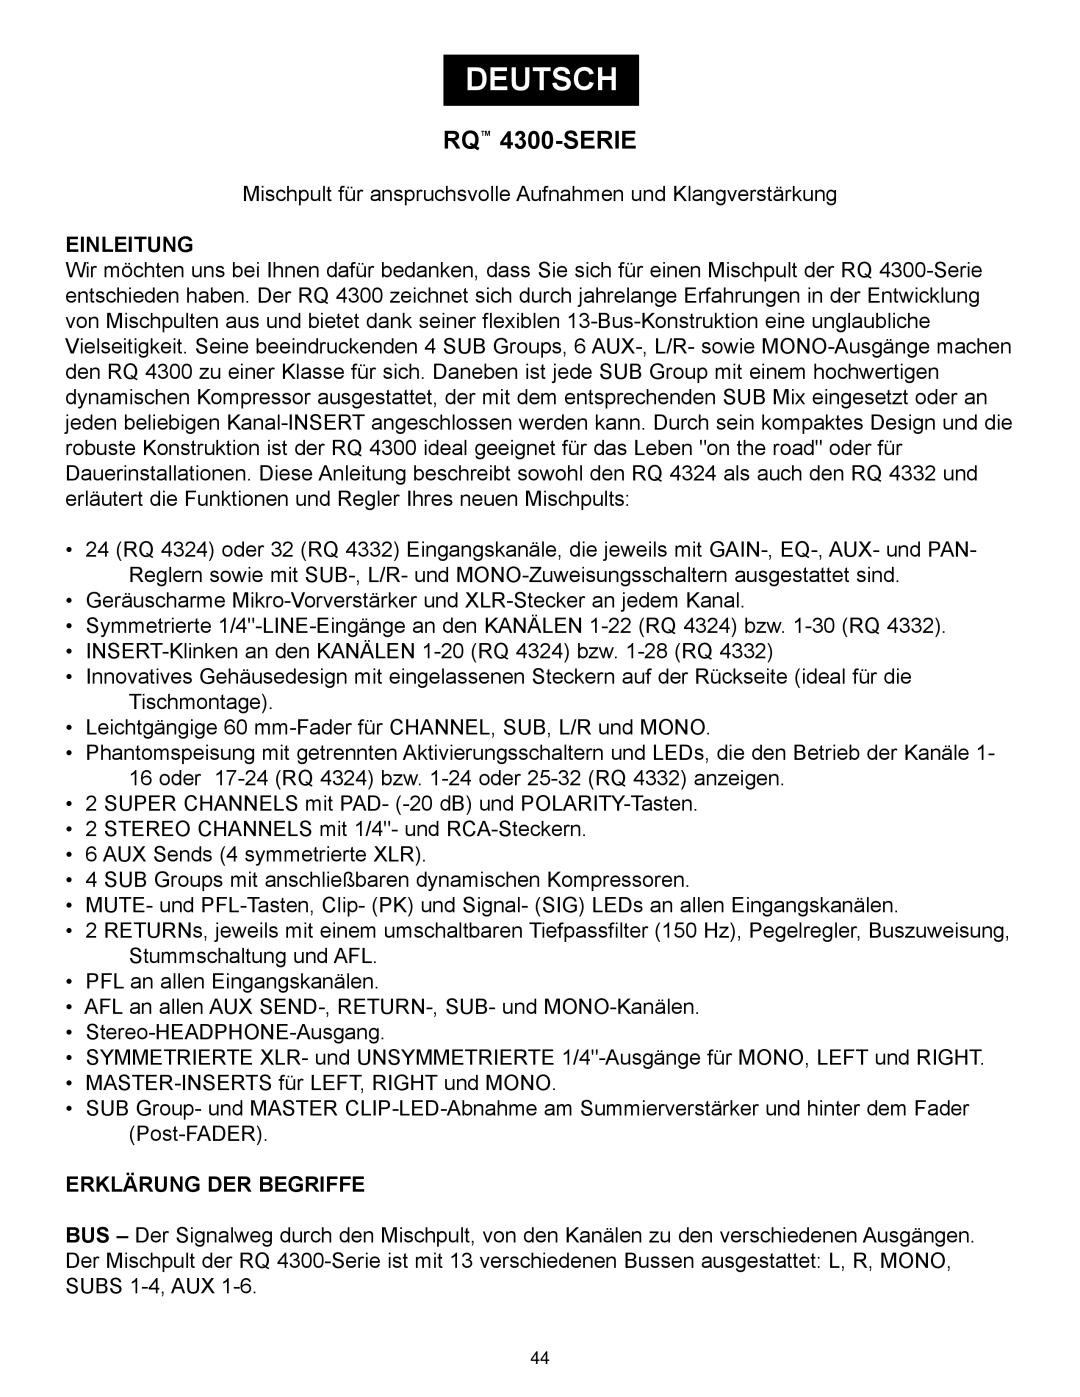 Peavey RQ 4300 Series manual Deutsch, RQ 4300-SERIE, Einleitung, Erklärung Der Begriffe 